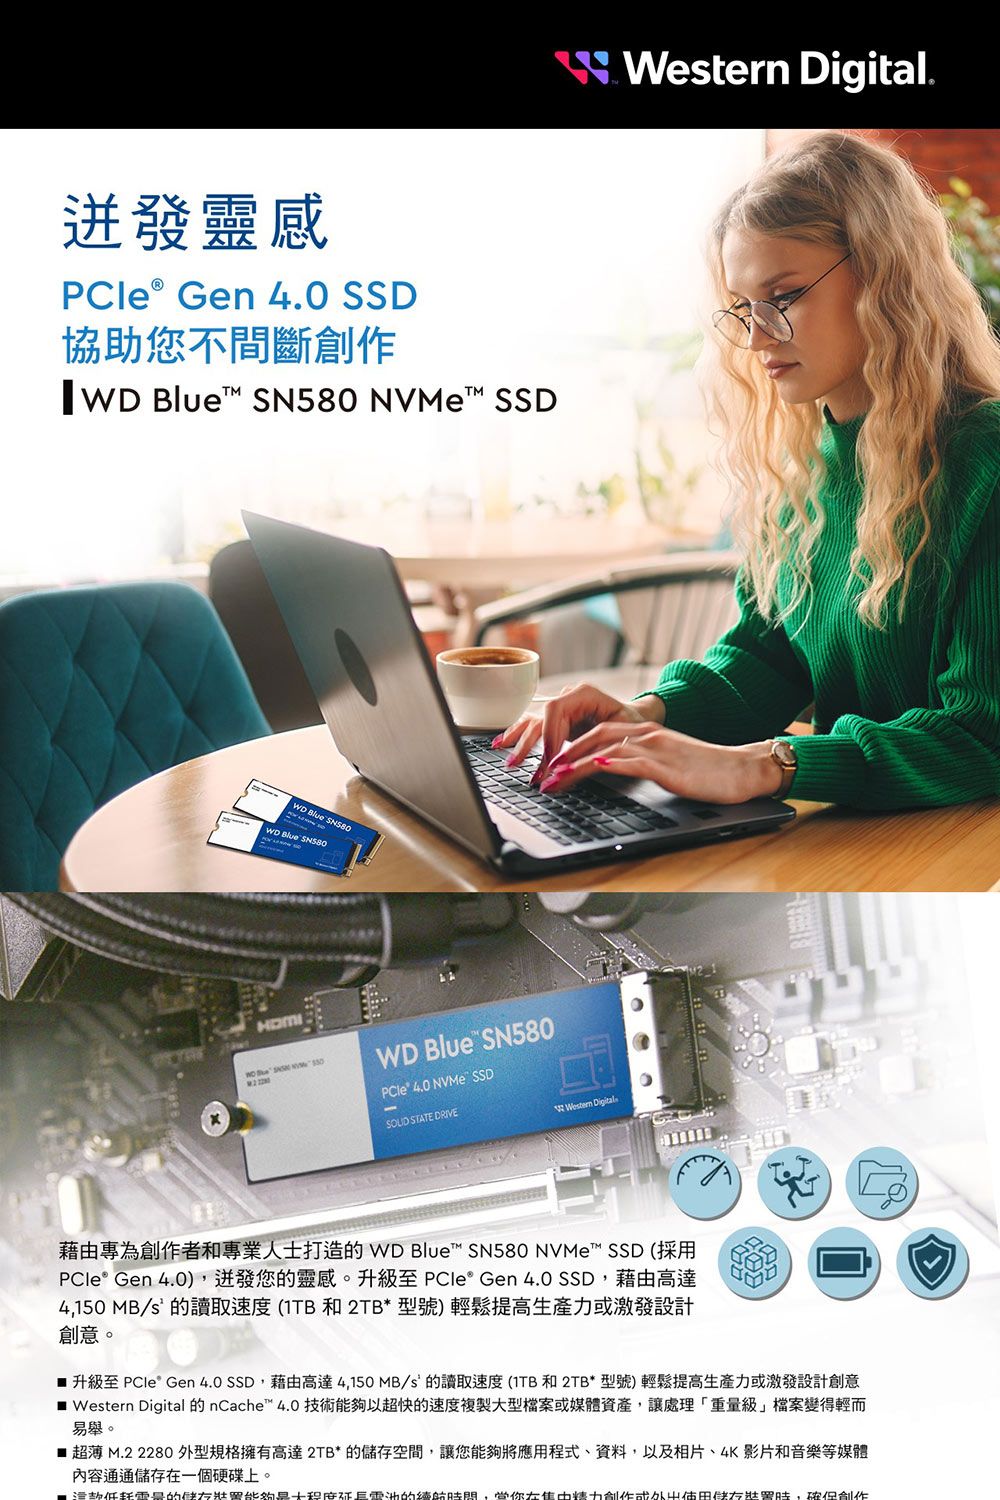 靈感 Gen 4.0 SSD協助您不間斷   NVeM SSD Blue WD Blue SN580WD Blue SN580 40 NVMe SSD STATE DRIVE Digital Western Digital.藉由專為者和專業人士打造 WD Blue SN580 NVMe™ SSD (採用 Gen 4.0)迸發您的靈感。升級至 PCle® Gen 4.0 SSD藉由高達4,150 MB/S的讀取速度(1TB 和 2TB*型號)輕鬆提高生產力激發設計創意。 升級至 PCle Gen 4.0 SSD,藉由高達4,150MB/s 的讀取速度(1TB和2TB*型號)輕鬆提高生產力或激發設計創意 Western Digital 的 nCache™ 4.0 技術以超快的速度複製型檔案或媒體資產,讓處理「重級」檔案變得輕而易舉。 超薄 M.2 2280 外型規格擁有高達2TB*的空間,讓您能夠將應用程式、資料,以及相片、4K影片和音樂等媒體內容通通儲存一個硬碟上。量的能夠大的,在創作或儲存,創作